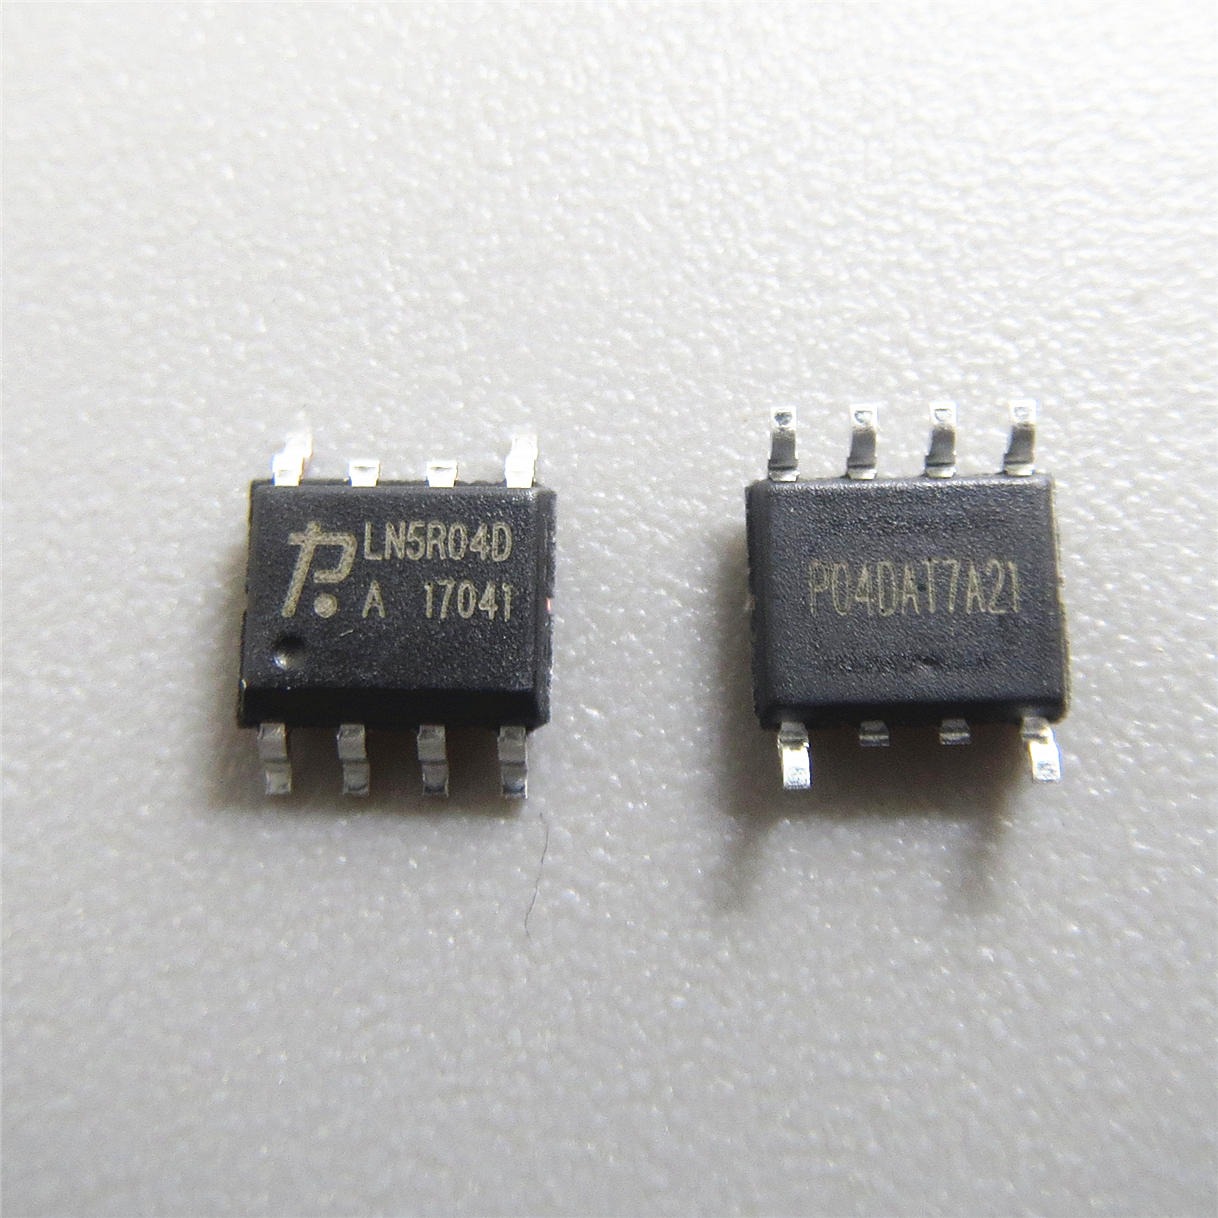 LN5R04DA 代理  触摸芯片 单片机  电源管理芯片 放算IC专业代理商芯片配单